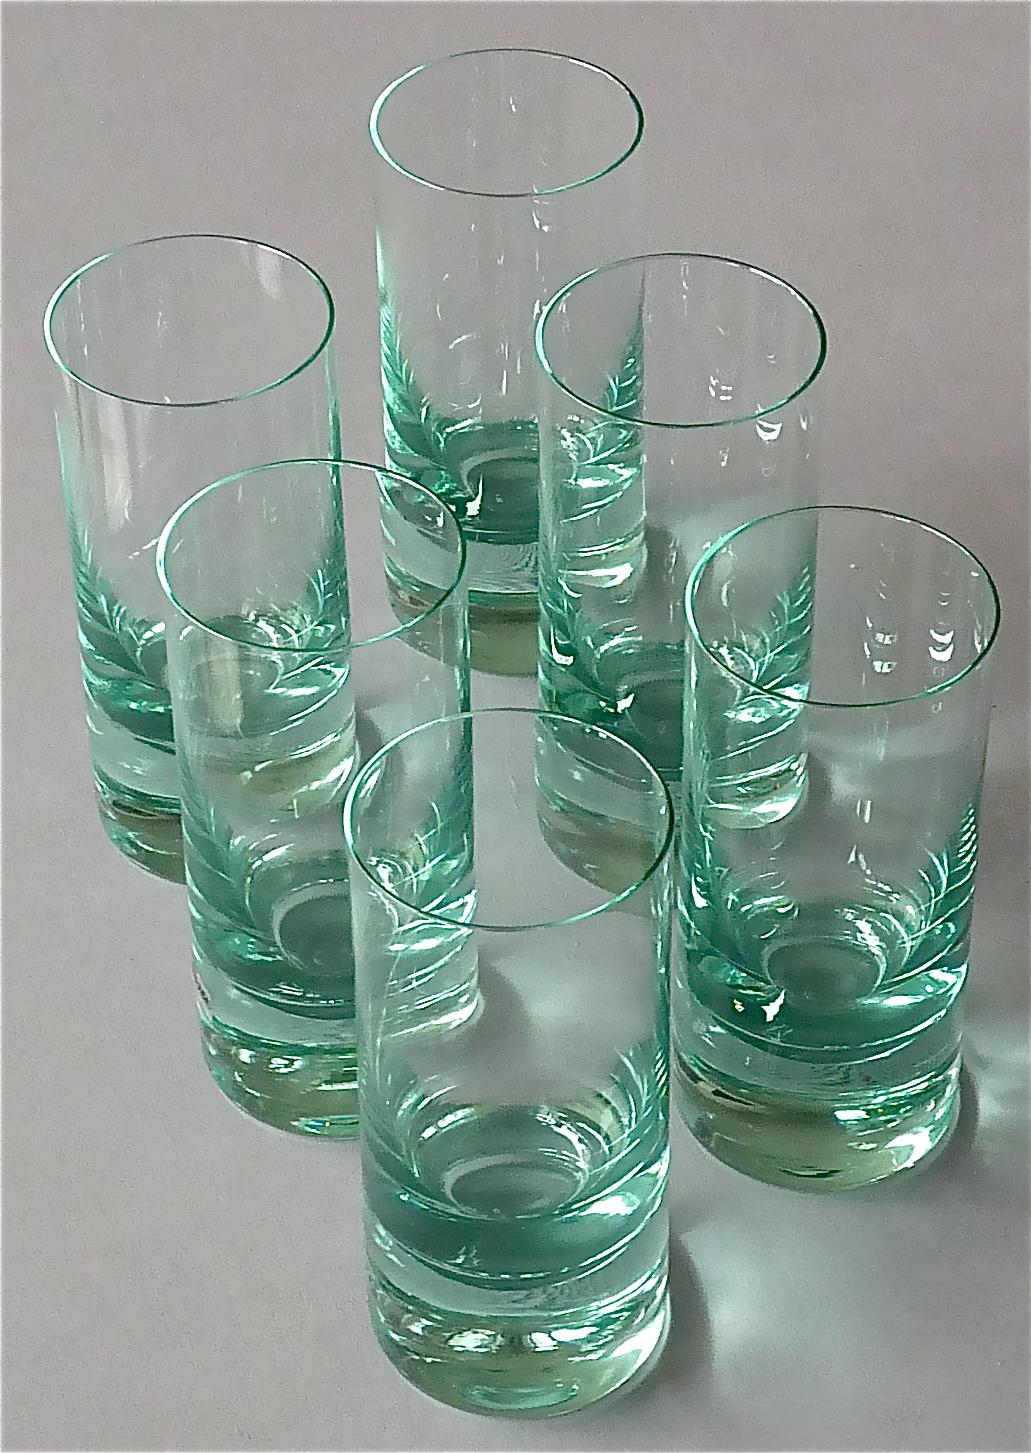 Chic ensemble de six verres à eau / long drink / cocktail en cristal conçus et exécutés dans les années 1960 par Moser en Tchécoslovaquie. La qualité haut de gamme du verre est réputée et peut être comparée à celle de Saint Louis et de Baccarat en